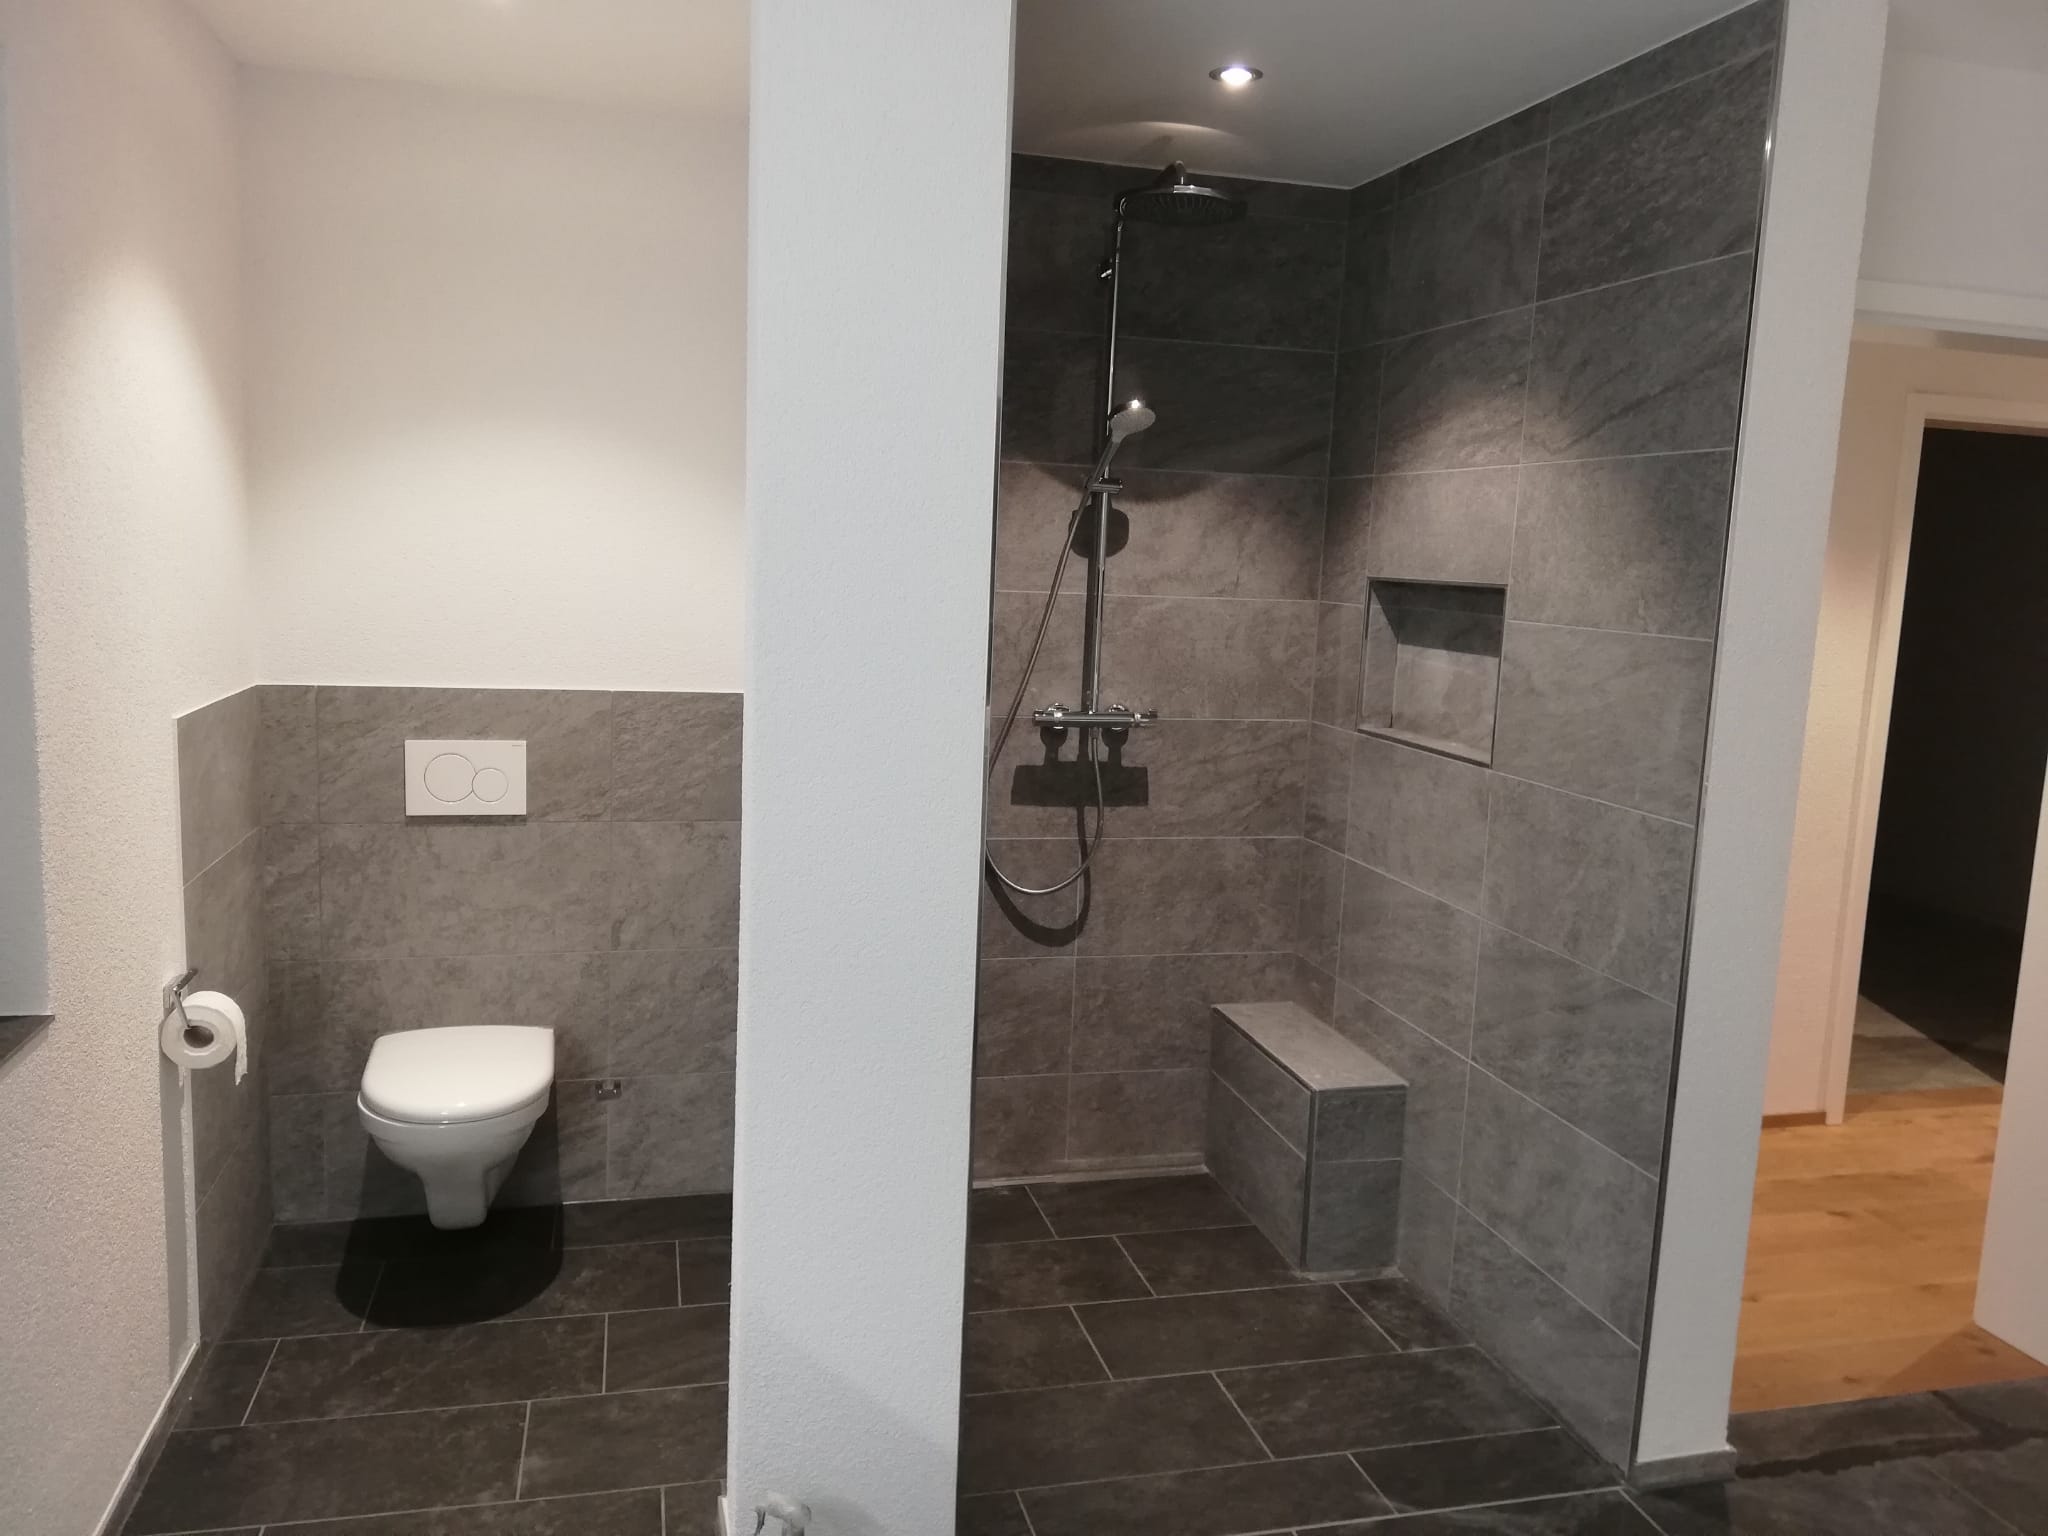 Bild von Bad in Neubau EFH, Fliesen 30x60 cm, WC und Duschnische mit Sitzbank. Fliesenlegen von Wand- und Bodenfliesen aller Art und Format